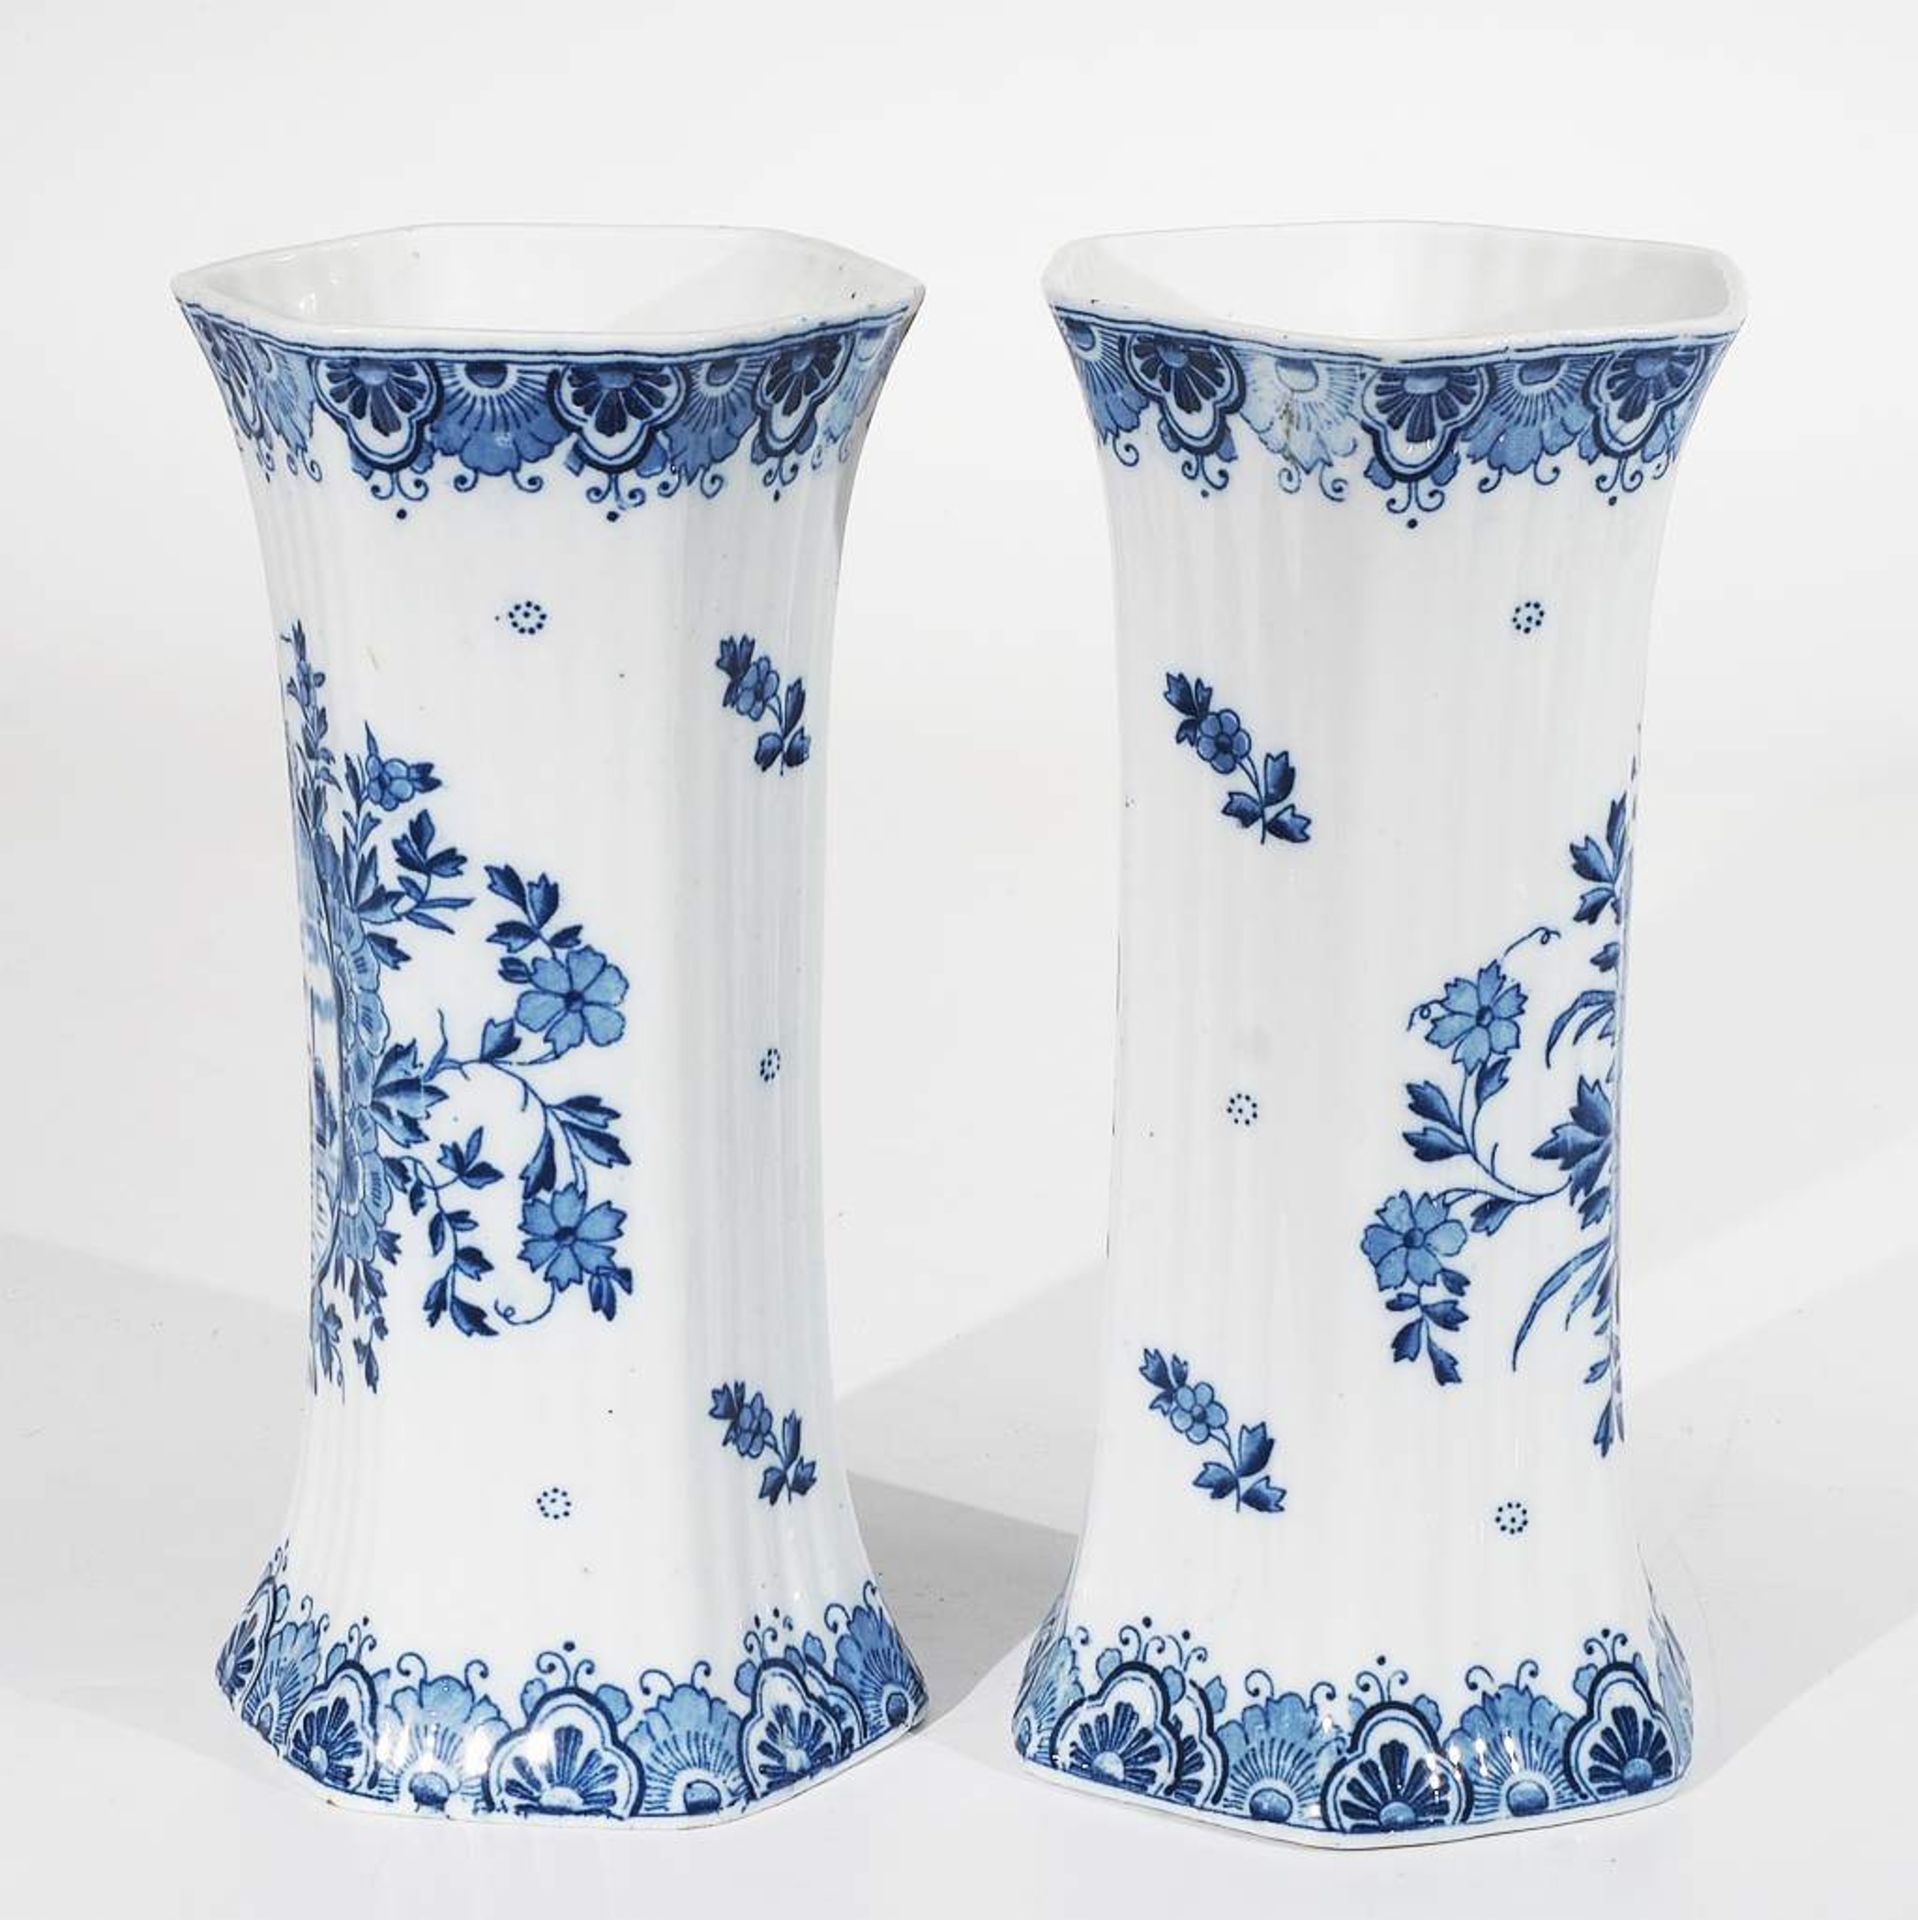 Delfter Fayence Vasenpaar. 20. Jahrhundert, sechseckige hohe Form, kobaltblaue Blumenbemalung, sch - Image 4 of 7